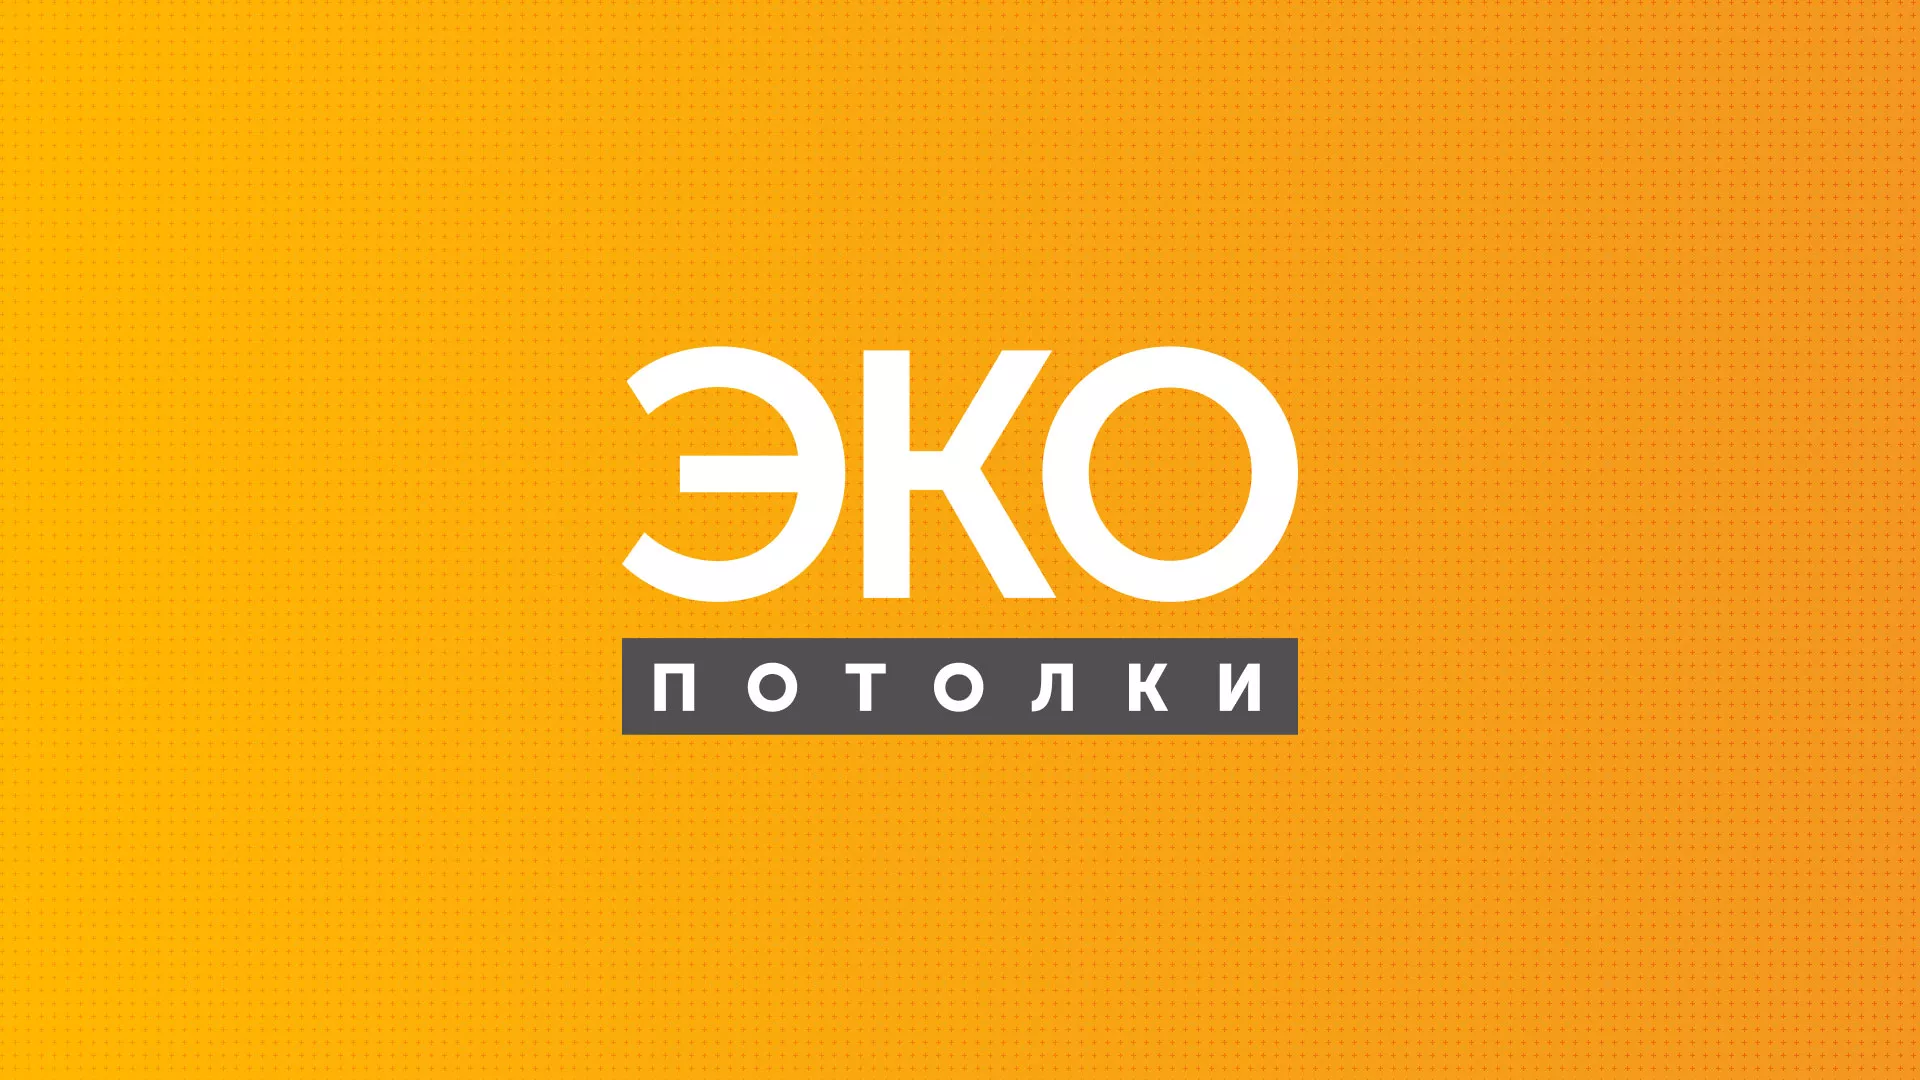 Разработка сайта по натяжным потолкам «Эко Потолки» в Железноводске